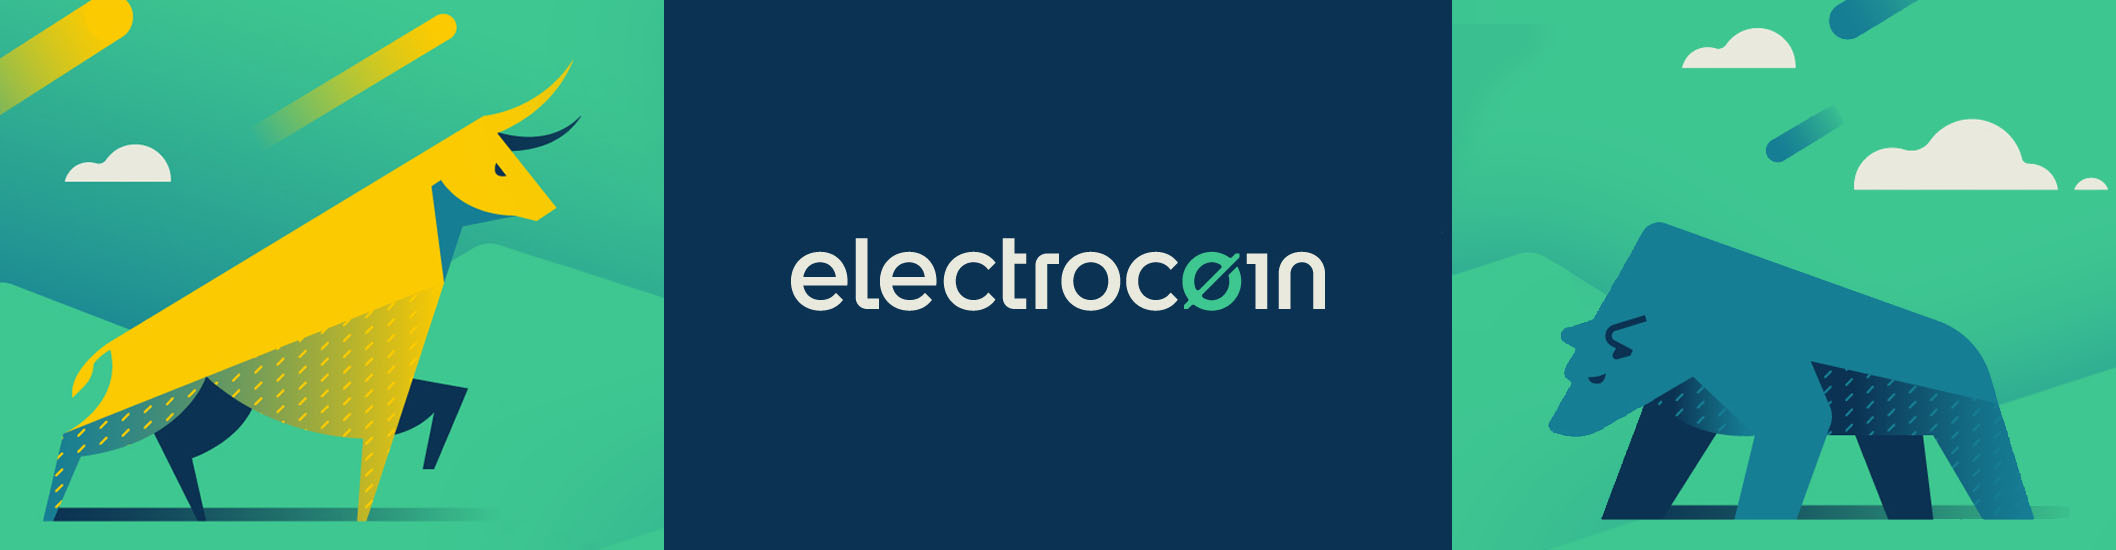 electrocoin_hero-2116x550